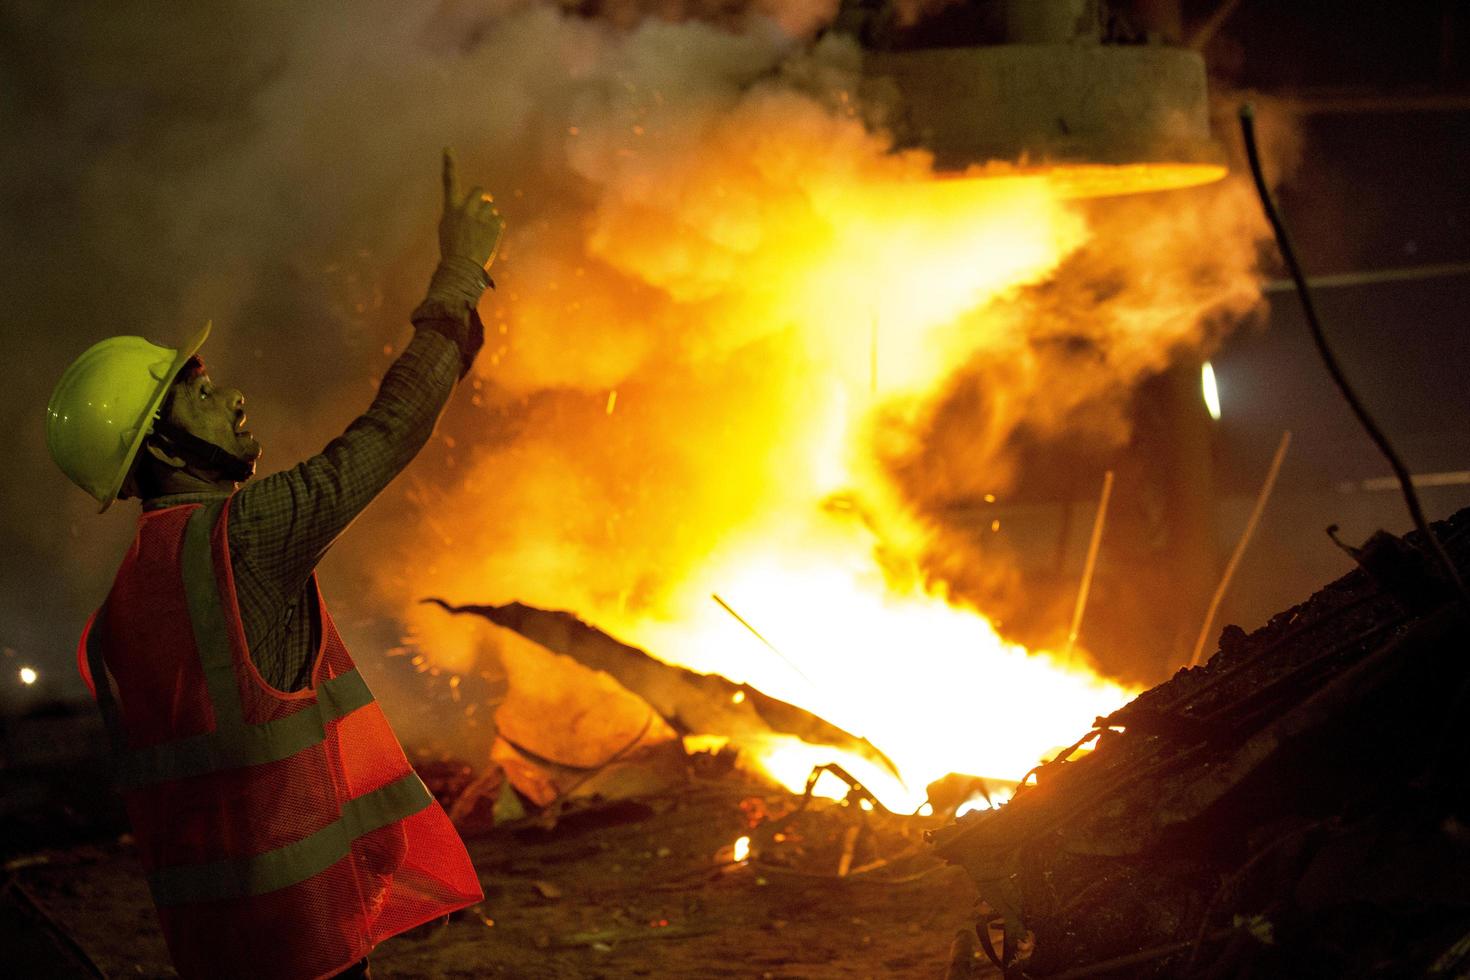 Bangladesh mayo 19, 2015 desde metal chatarra a hierro varilla haciendo acero fábrica máquina operador a demra, dhaka, bangladesh foto